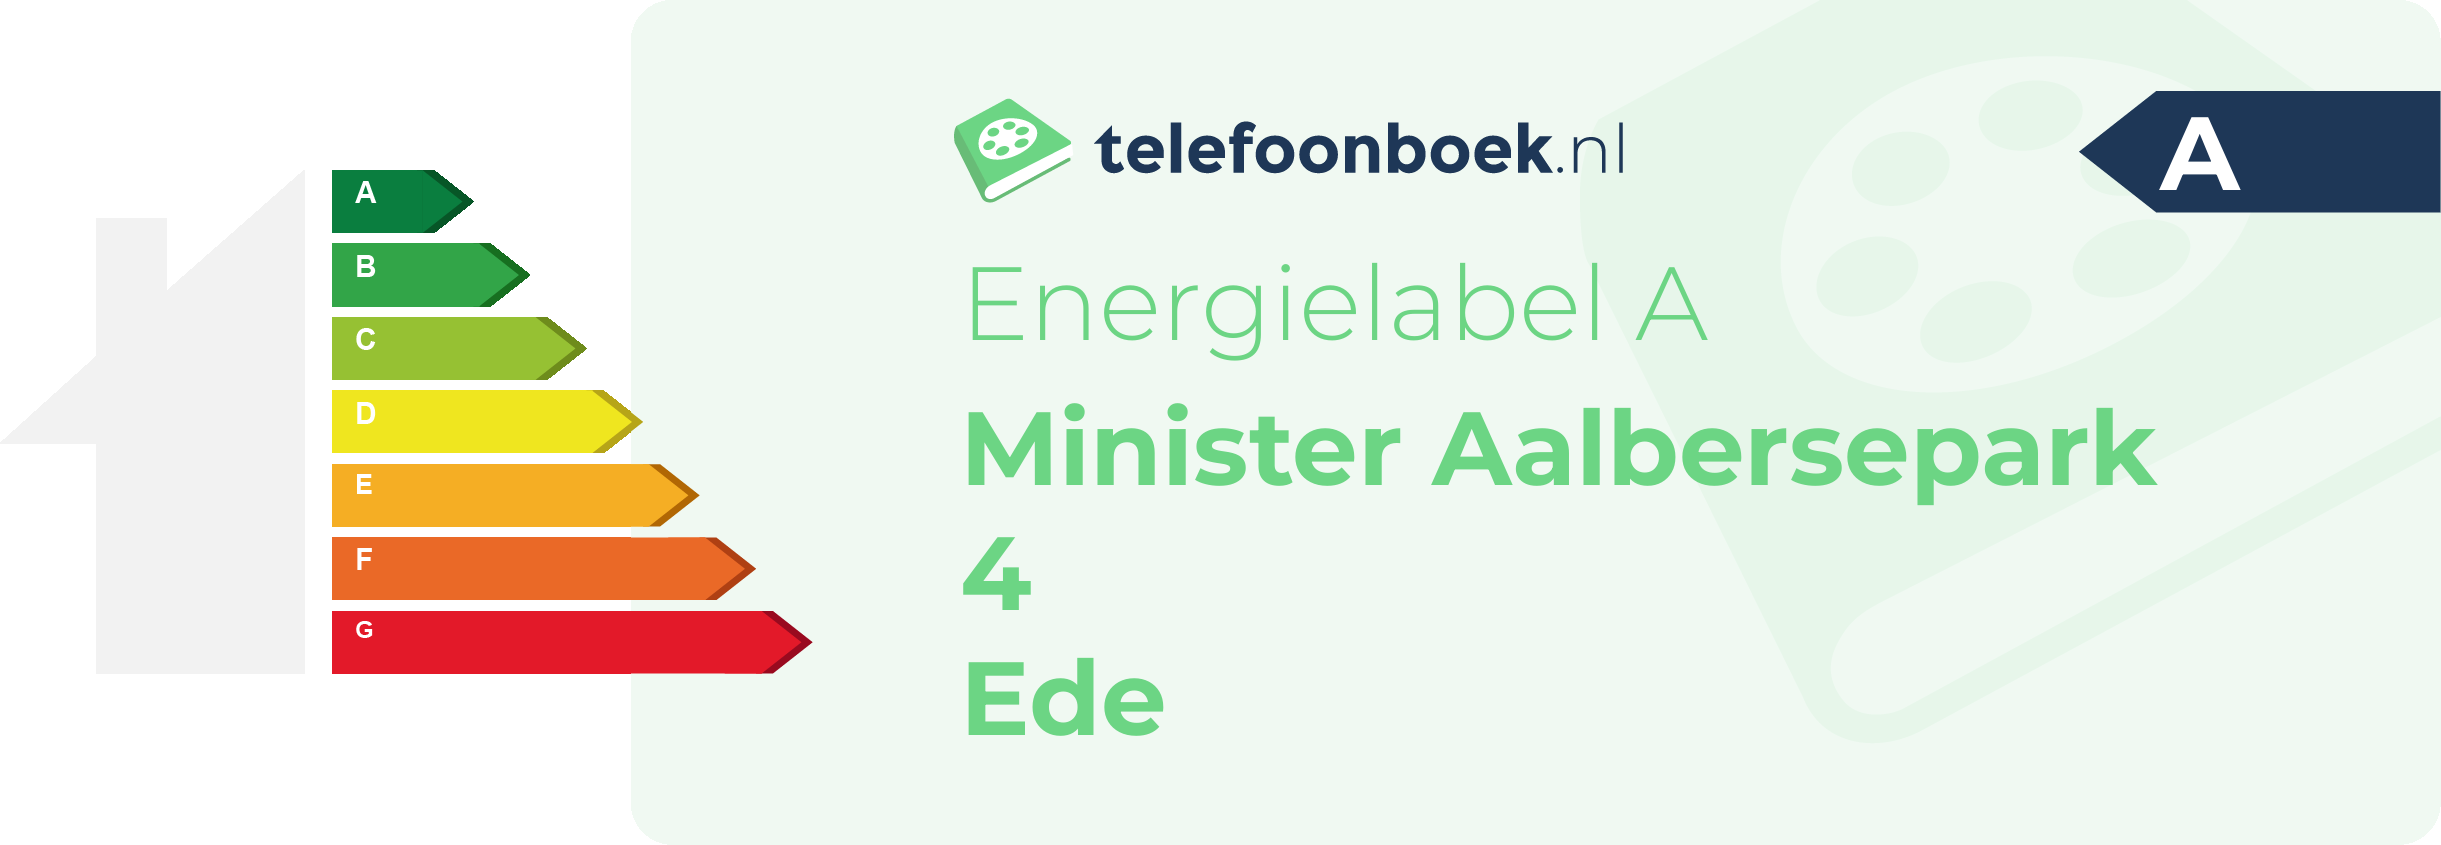 Energielabel Minister Aalbersepark 4 Ede